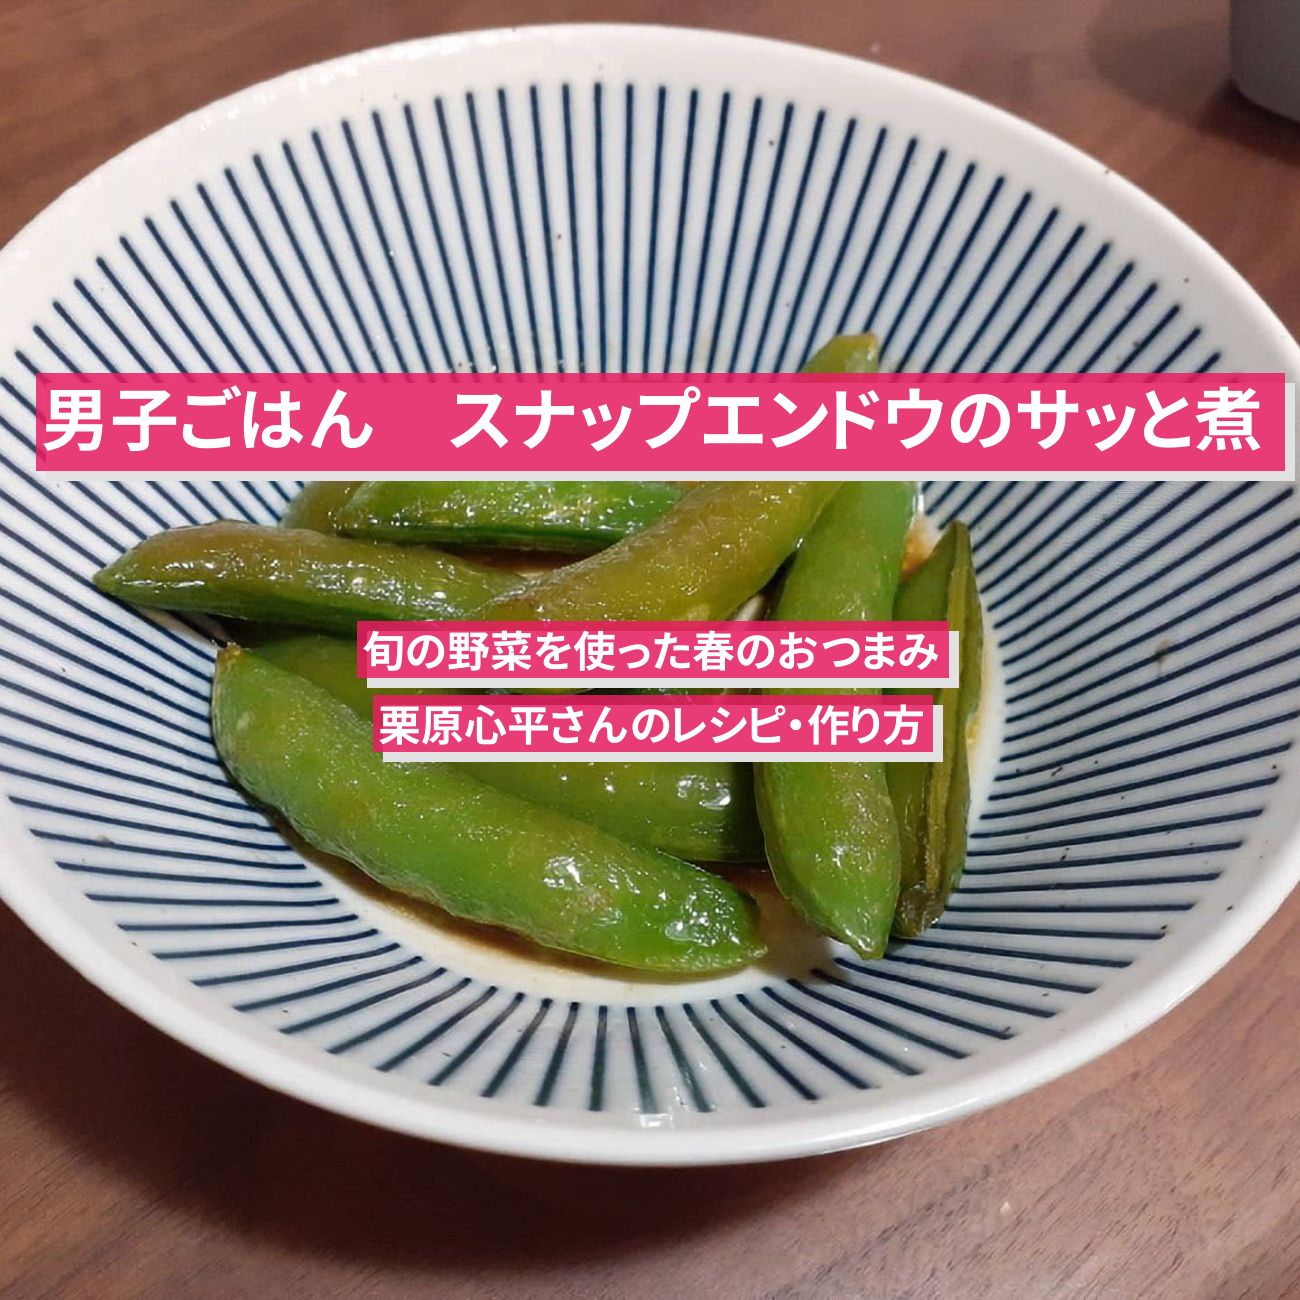 【男子ごはん】『スナップエンドウのサッと煮』栗原心平さんのレシピ・作り方